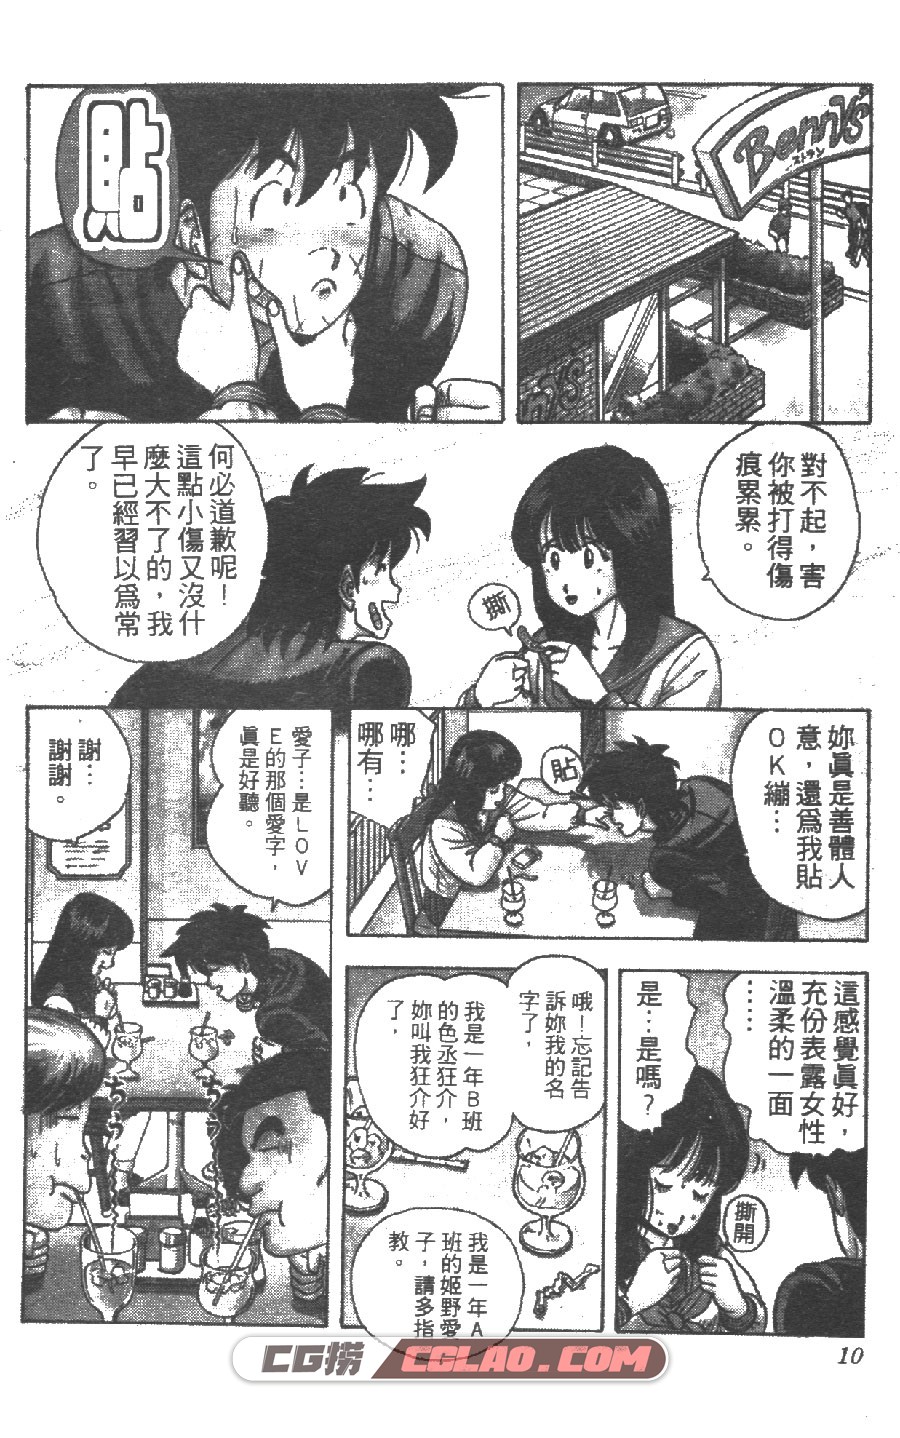 疯狂假面 安士庆周 1-6卷 漫画全集下载 百度网盘,CKamen005.jpg